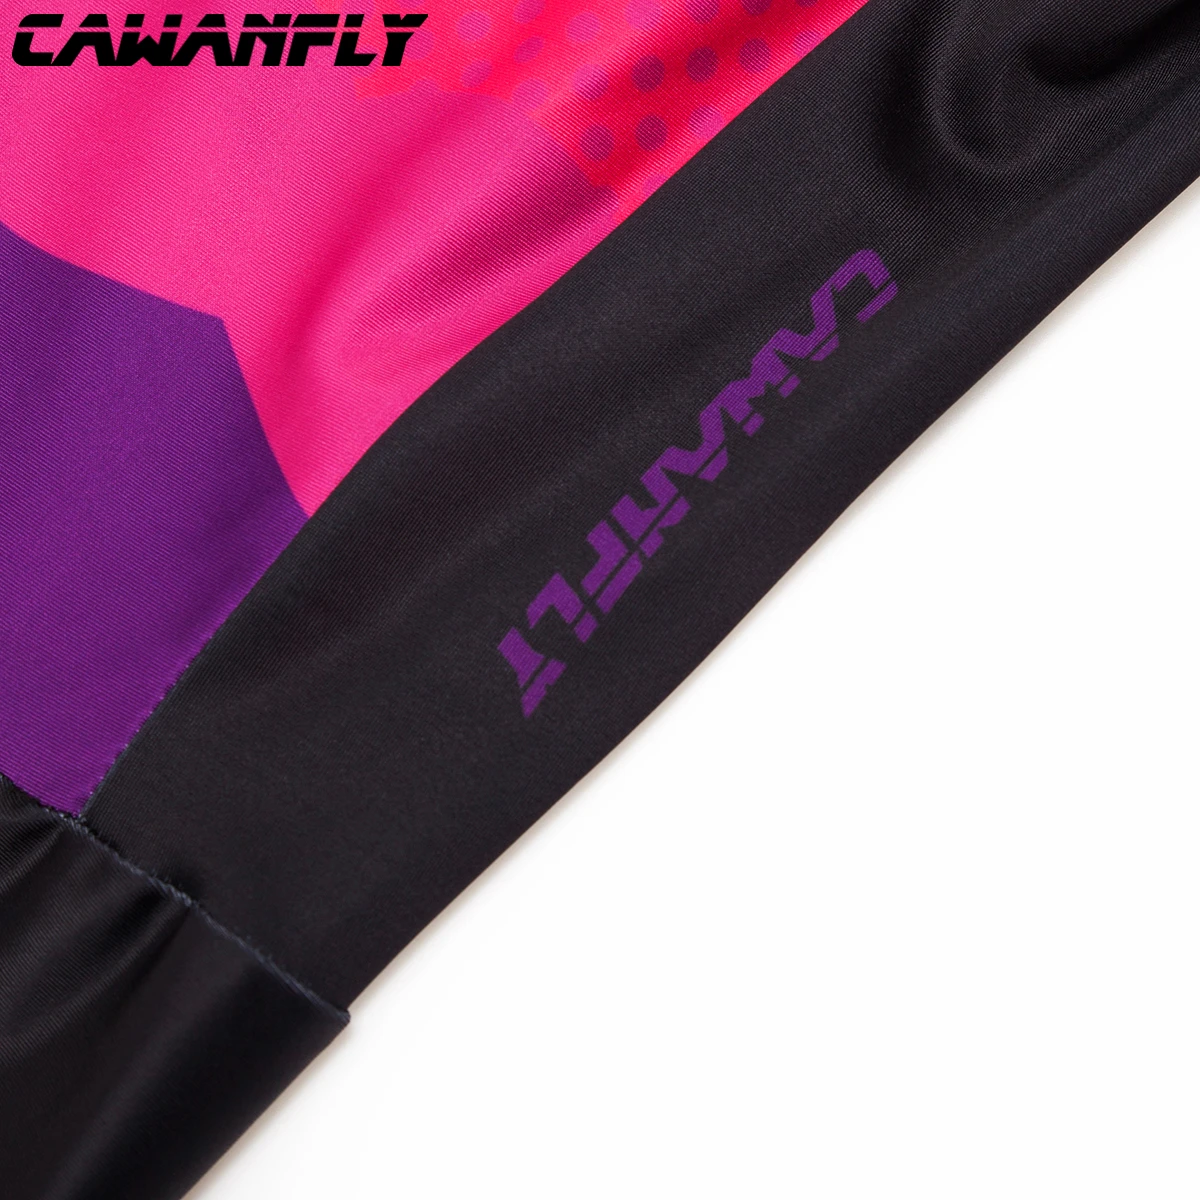 Pro команда триатлонный костюм женский Велоспорт шерстяной облегающий костюм комбинезон Велосипедное трико Ropa ciclismo набор розовый гель pad